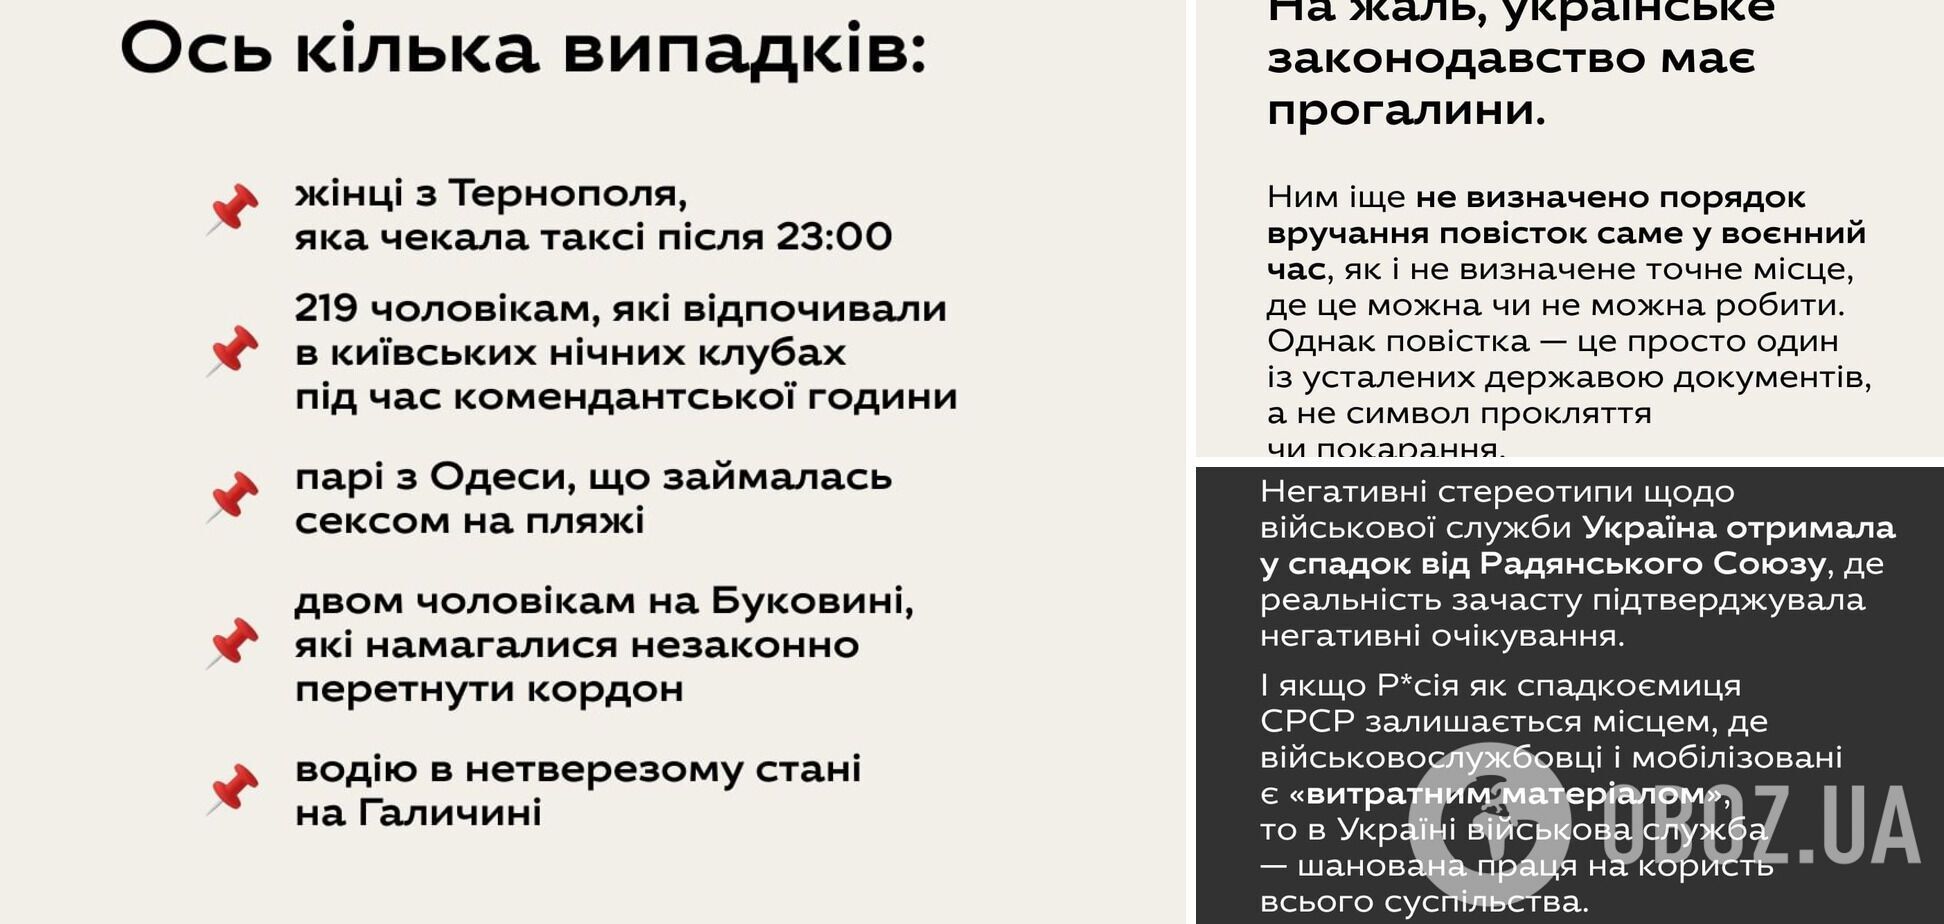 Ukraїner опросили людей по поводу вручения повесток в ВСУ.